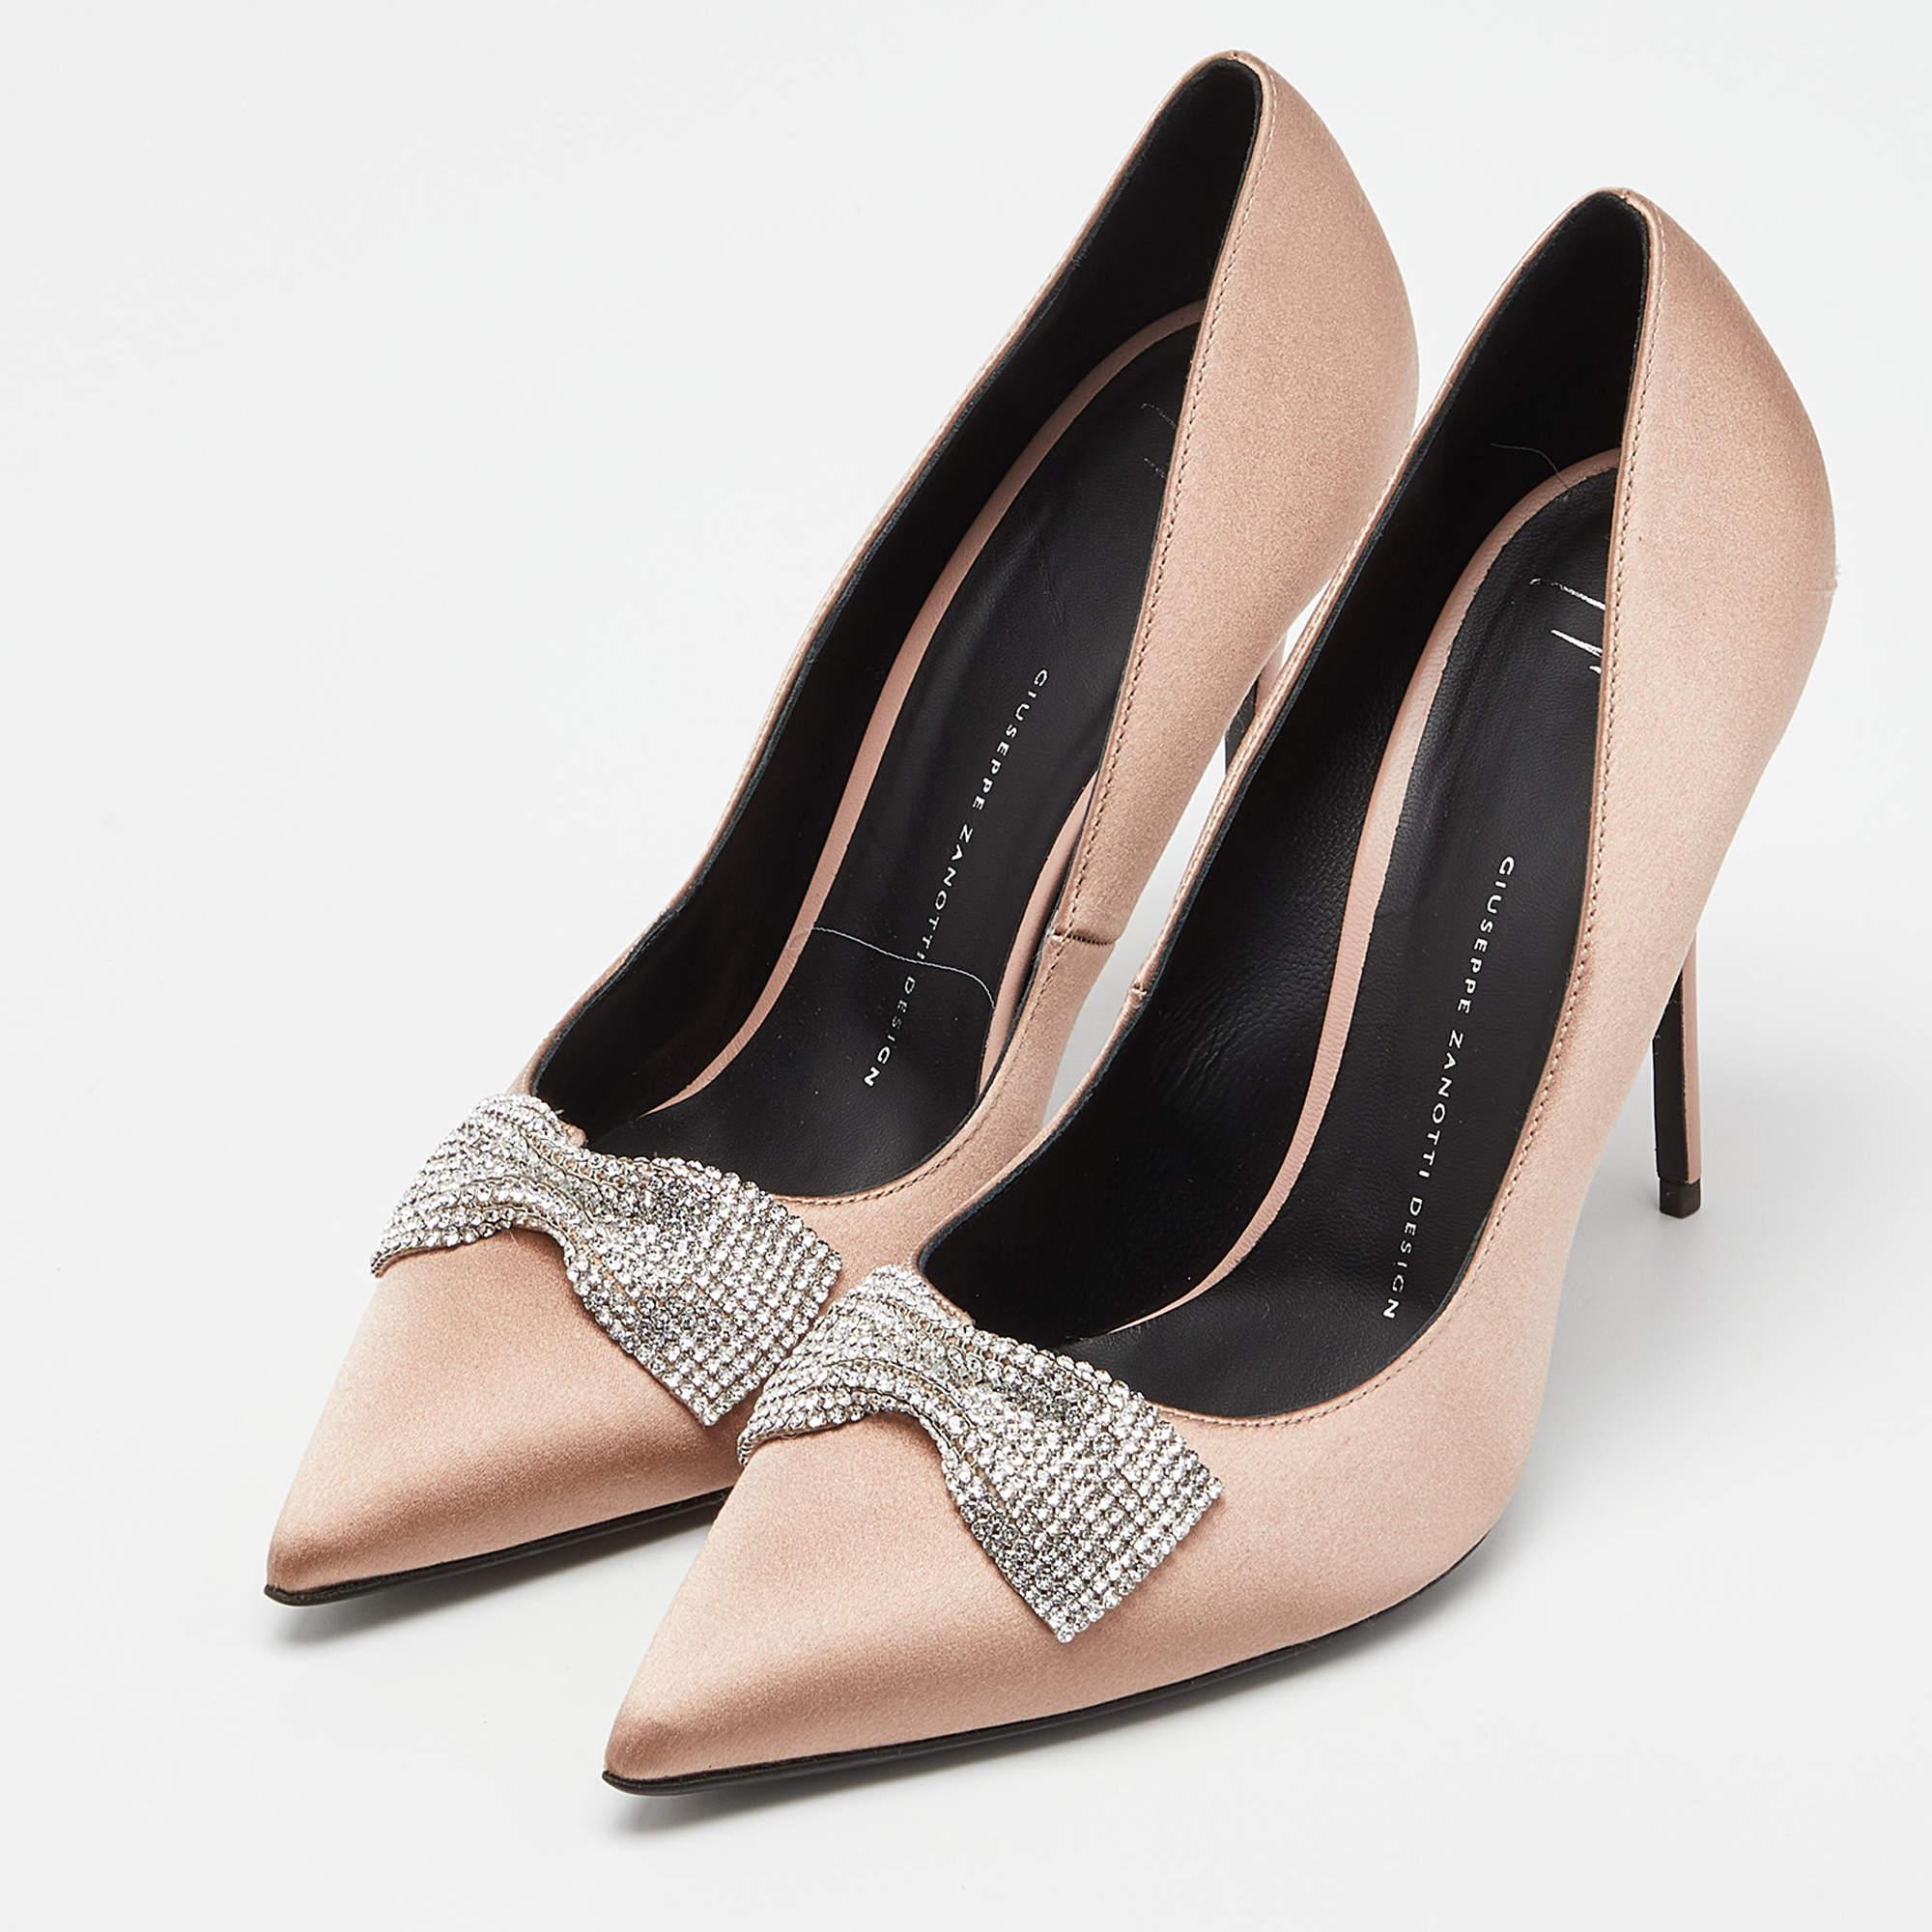 Affichez un style élégant avec cette paire d'escarpins. Ces chaussures de marque pour femmes sont fabriquées à partir de matériaux de qualité. Ils sont posés sur des semelles durables et des talons élégants.

